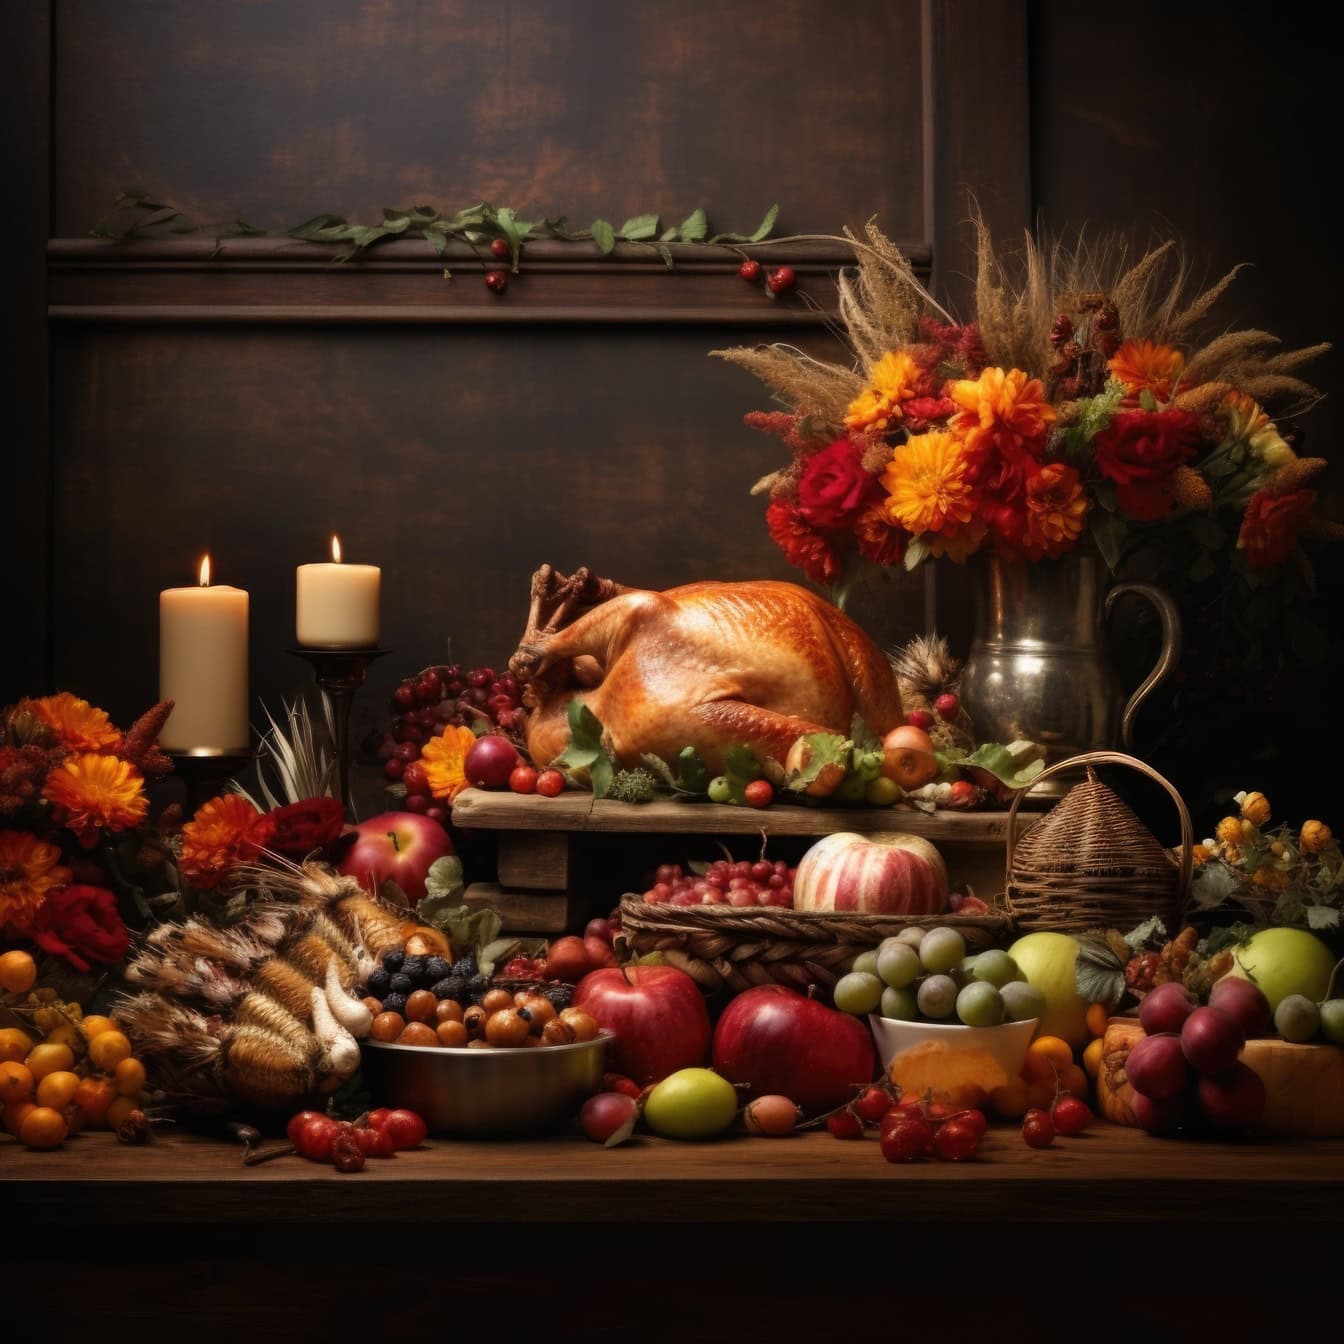 ローストした七面鳥と花瓶に入ったさまざまな果物や花が咲き乱れる感謝祭のディナーテーブルは、理想的な静物画のテンプレートです